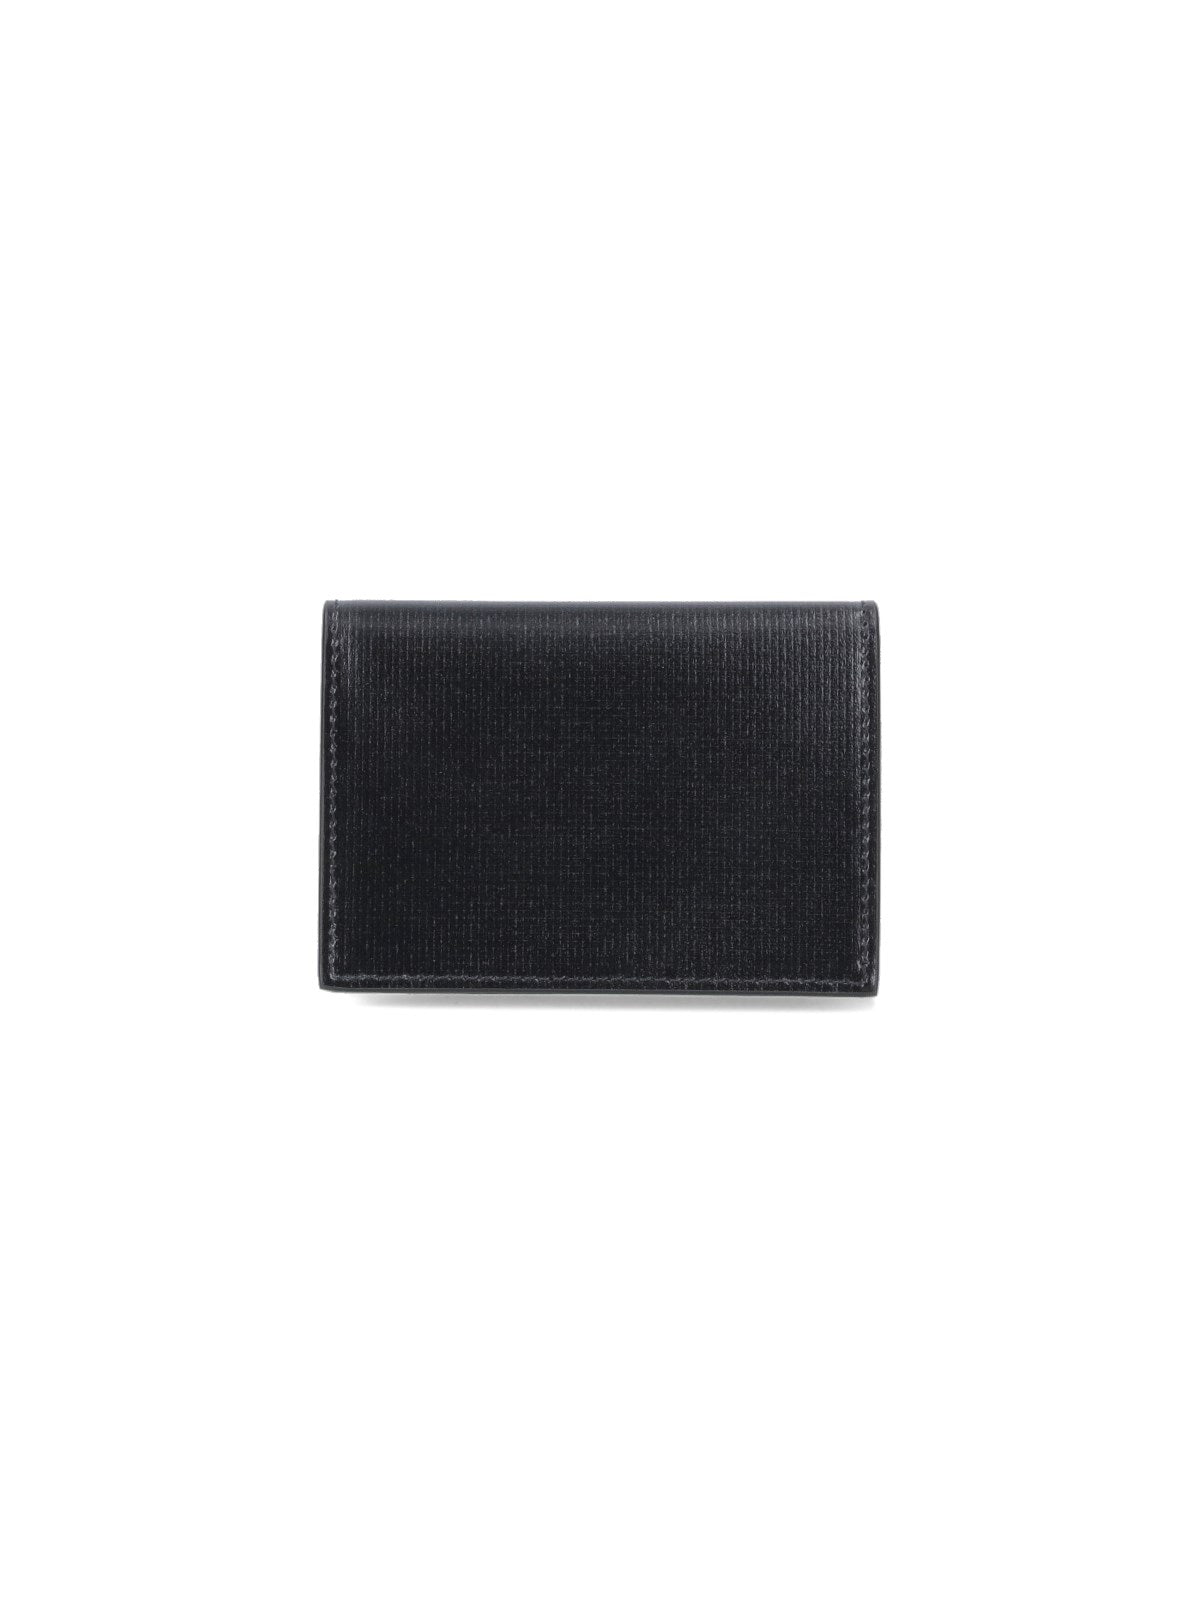 Givenchy Portafoglio logo-portafogli-Givenchy-Portafoglio logo Givenchy, in pelle nera, stampa logo fronte, chiusura bottone pressione, due slot per carte, uno scomparto per banconote.-Dresso